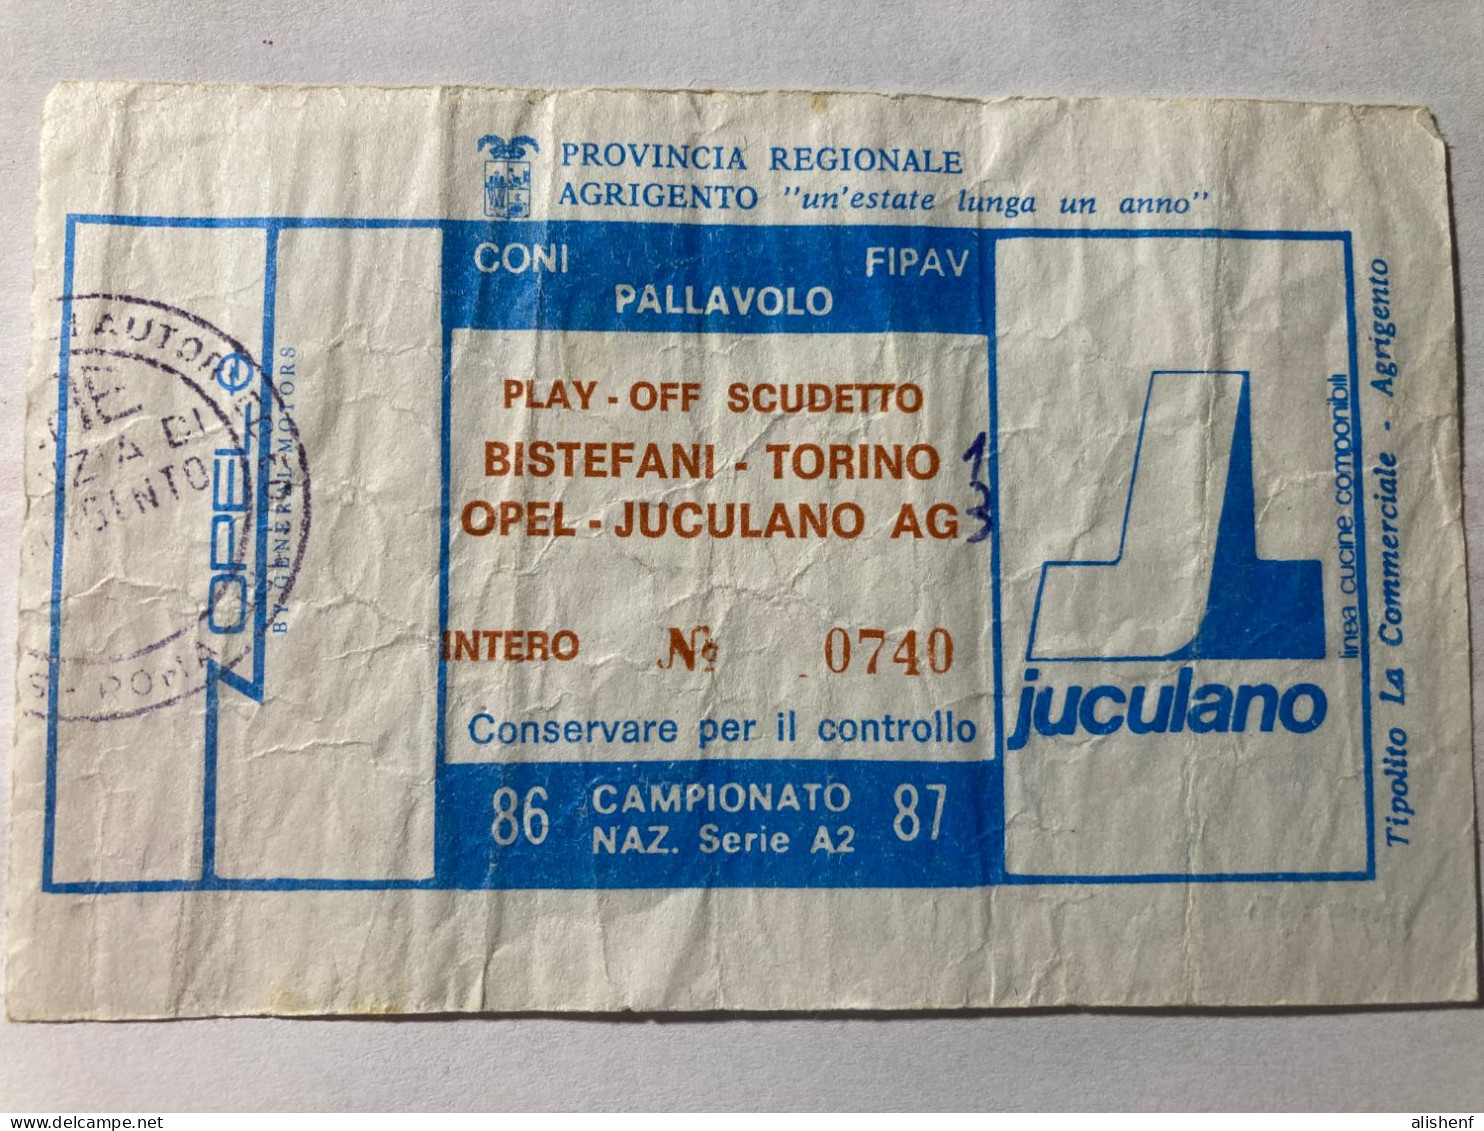 Biglietto Pallavolo Maschile A2 Play Off Scudetto Opel Juculano Agrigento Bistefani Torino 1986-87 - Tickets - Vouchers